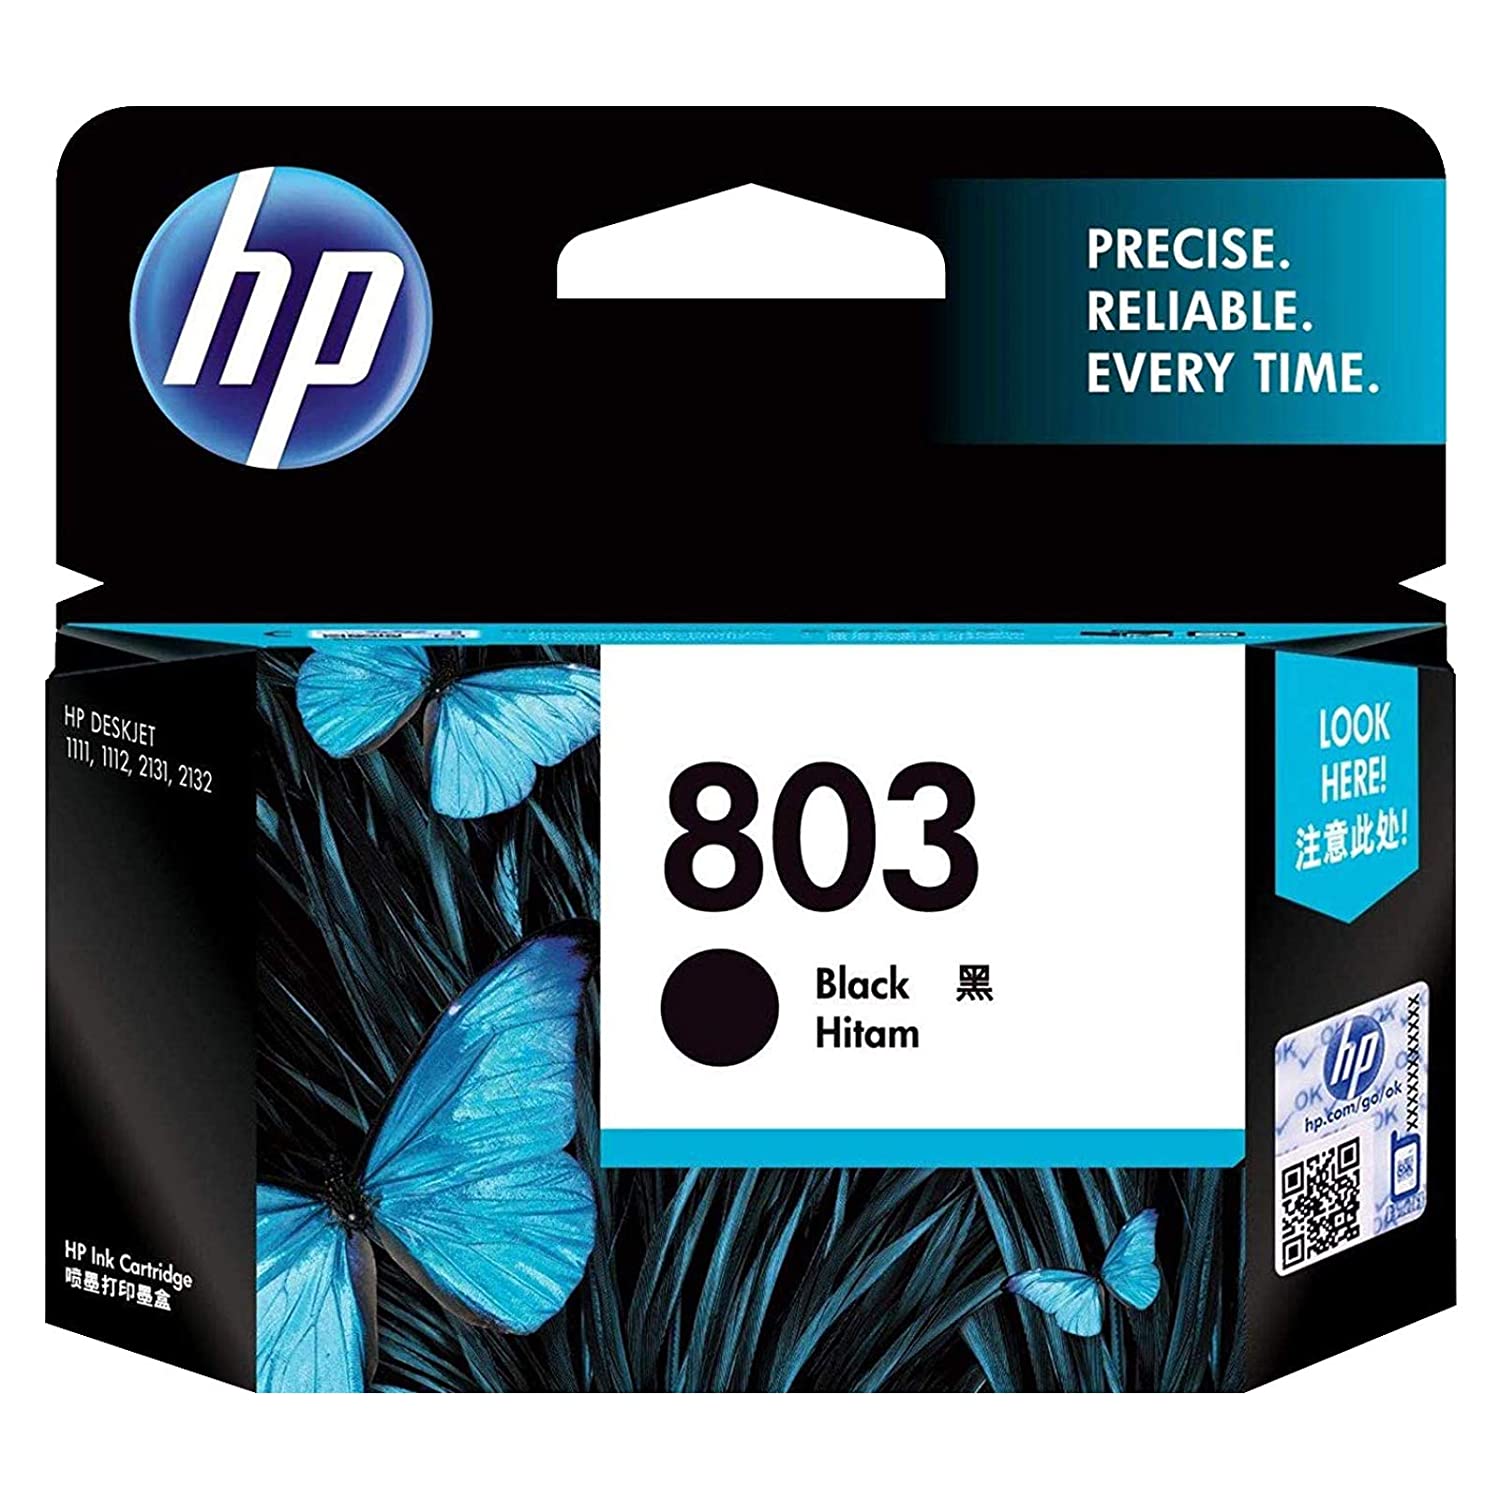 HP 803 Small Black Ink Cartridge - F6V23AA